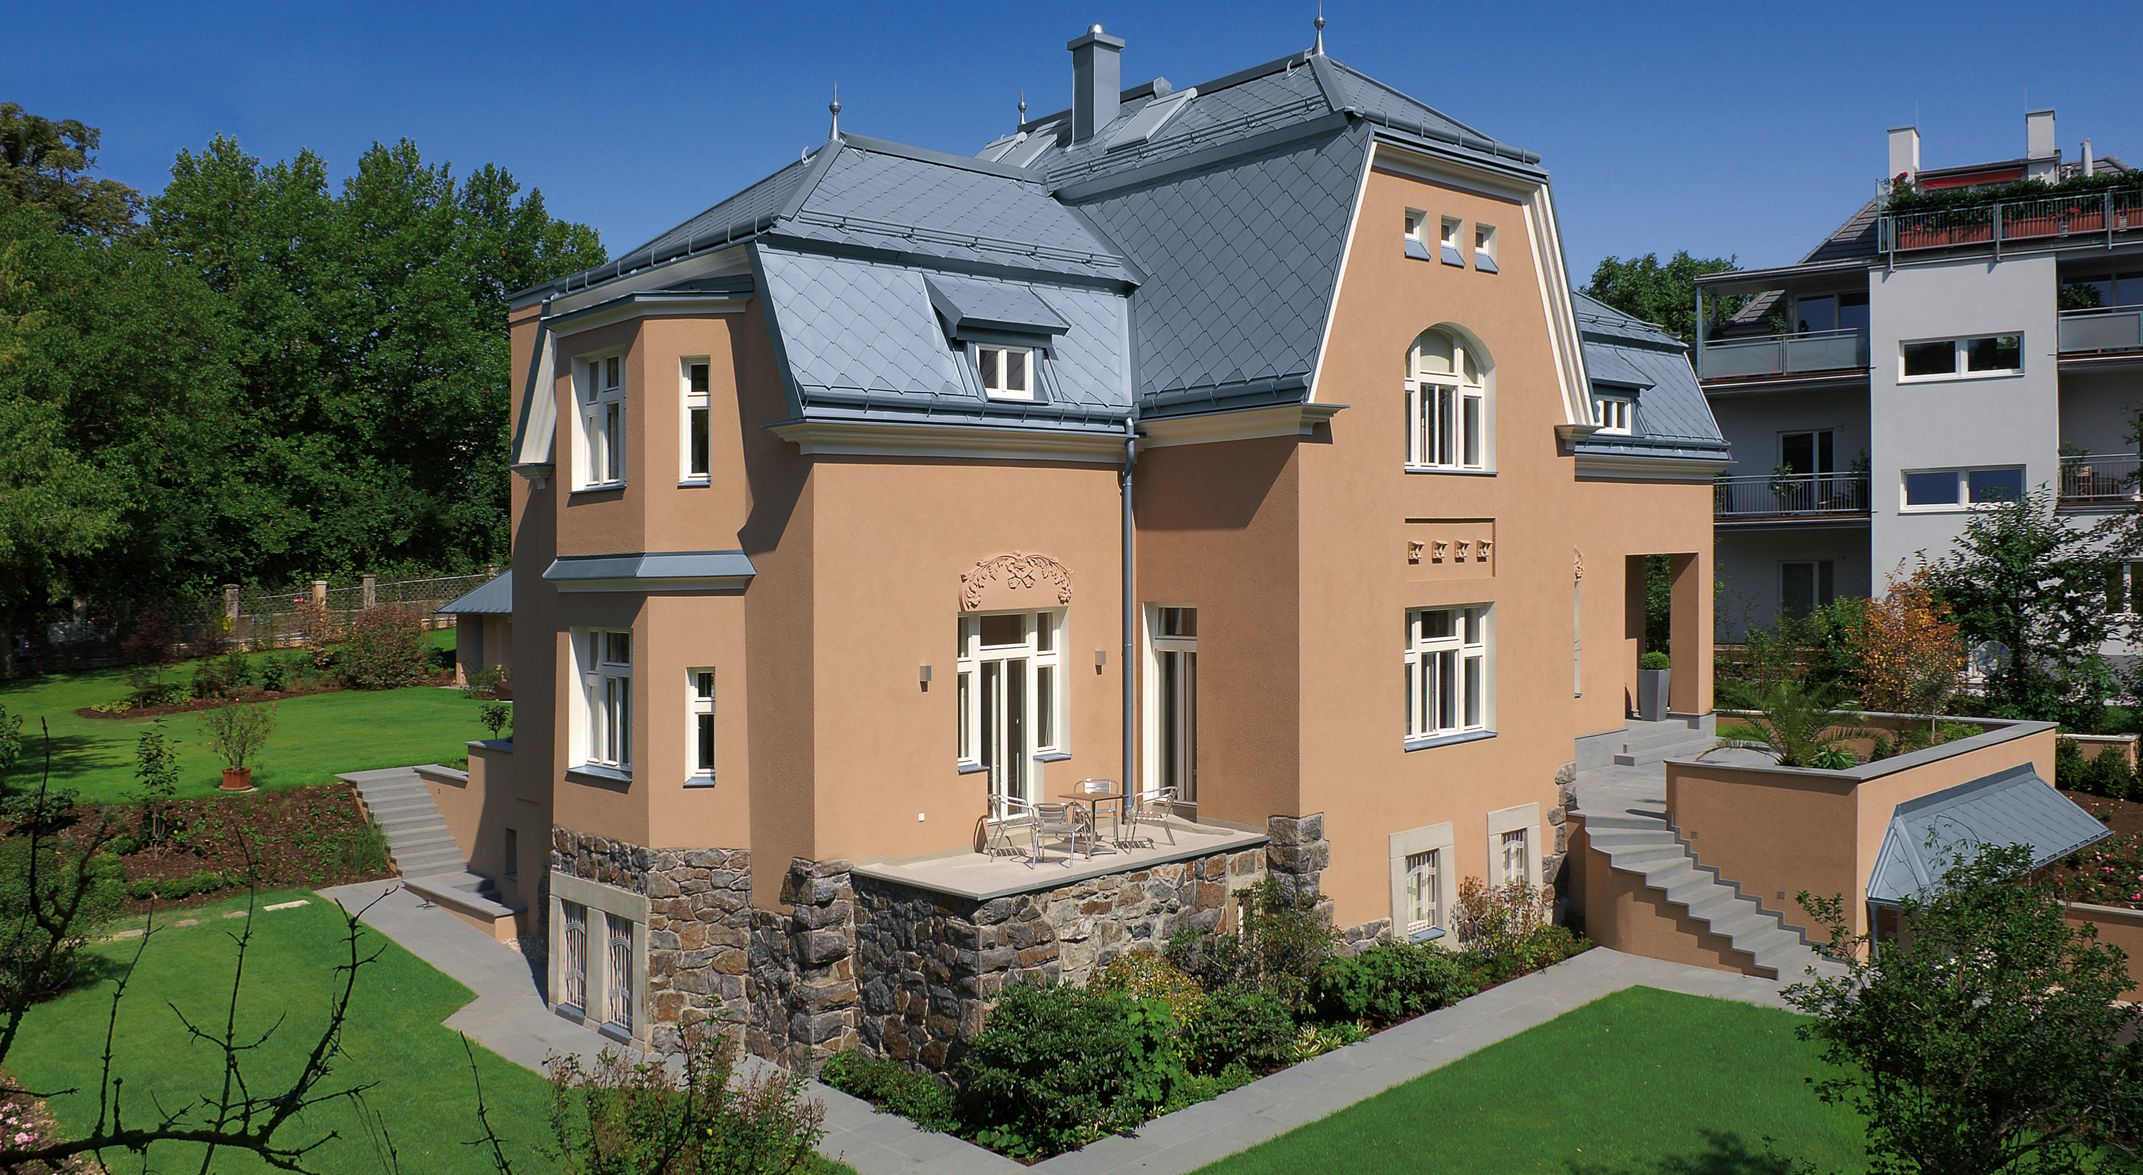 Wohnhaus in Linz mit einer Dacheindeckung aus Zink mit der Multiform-Raute